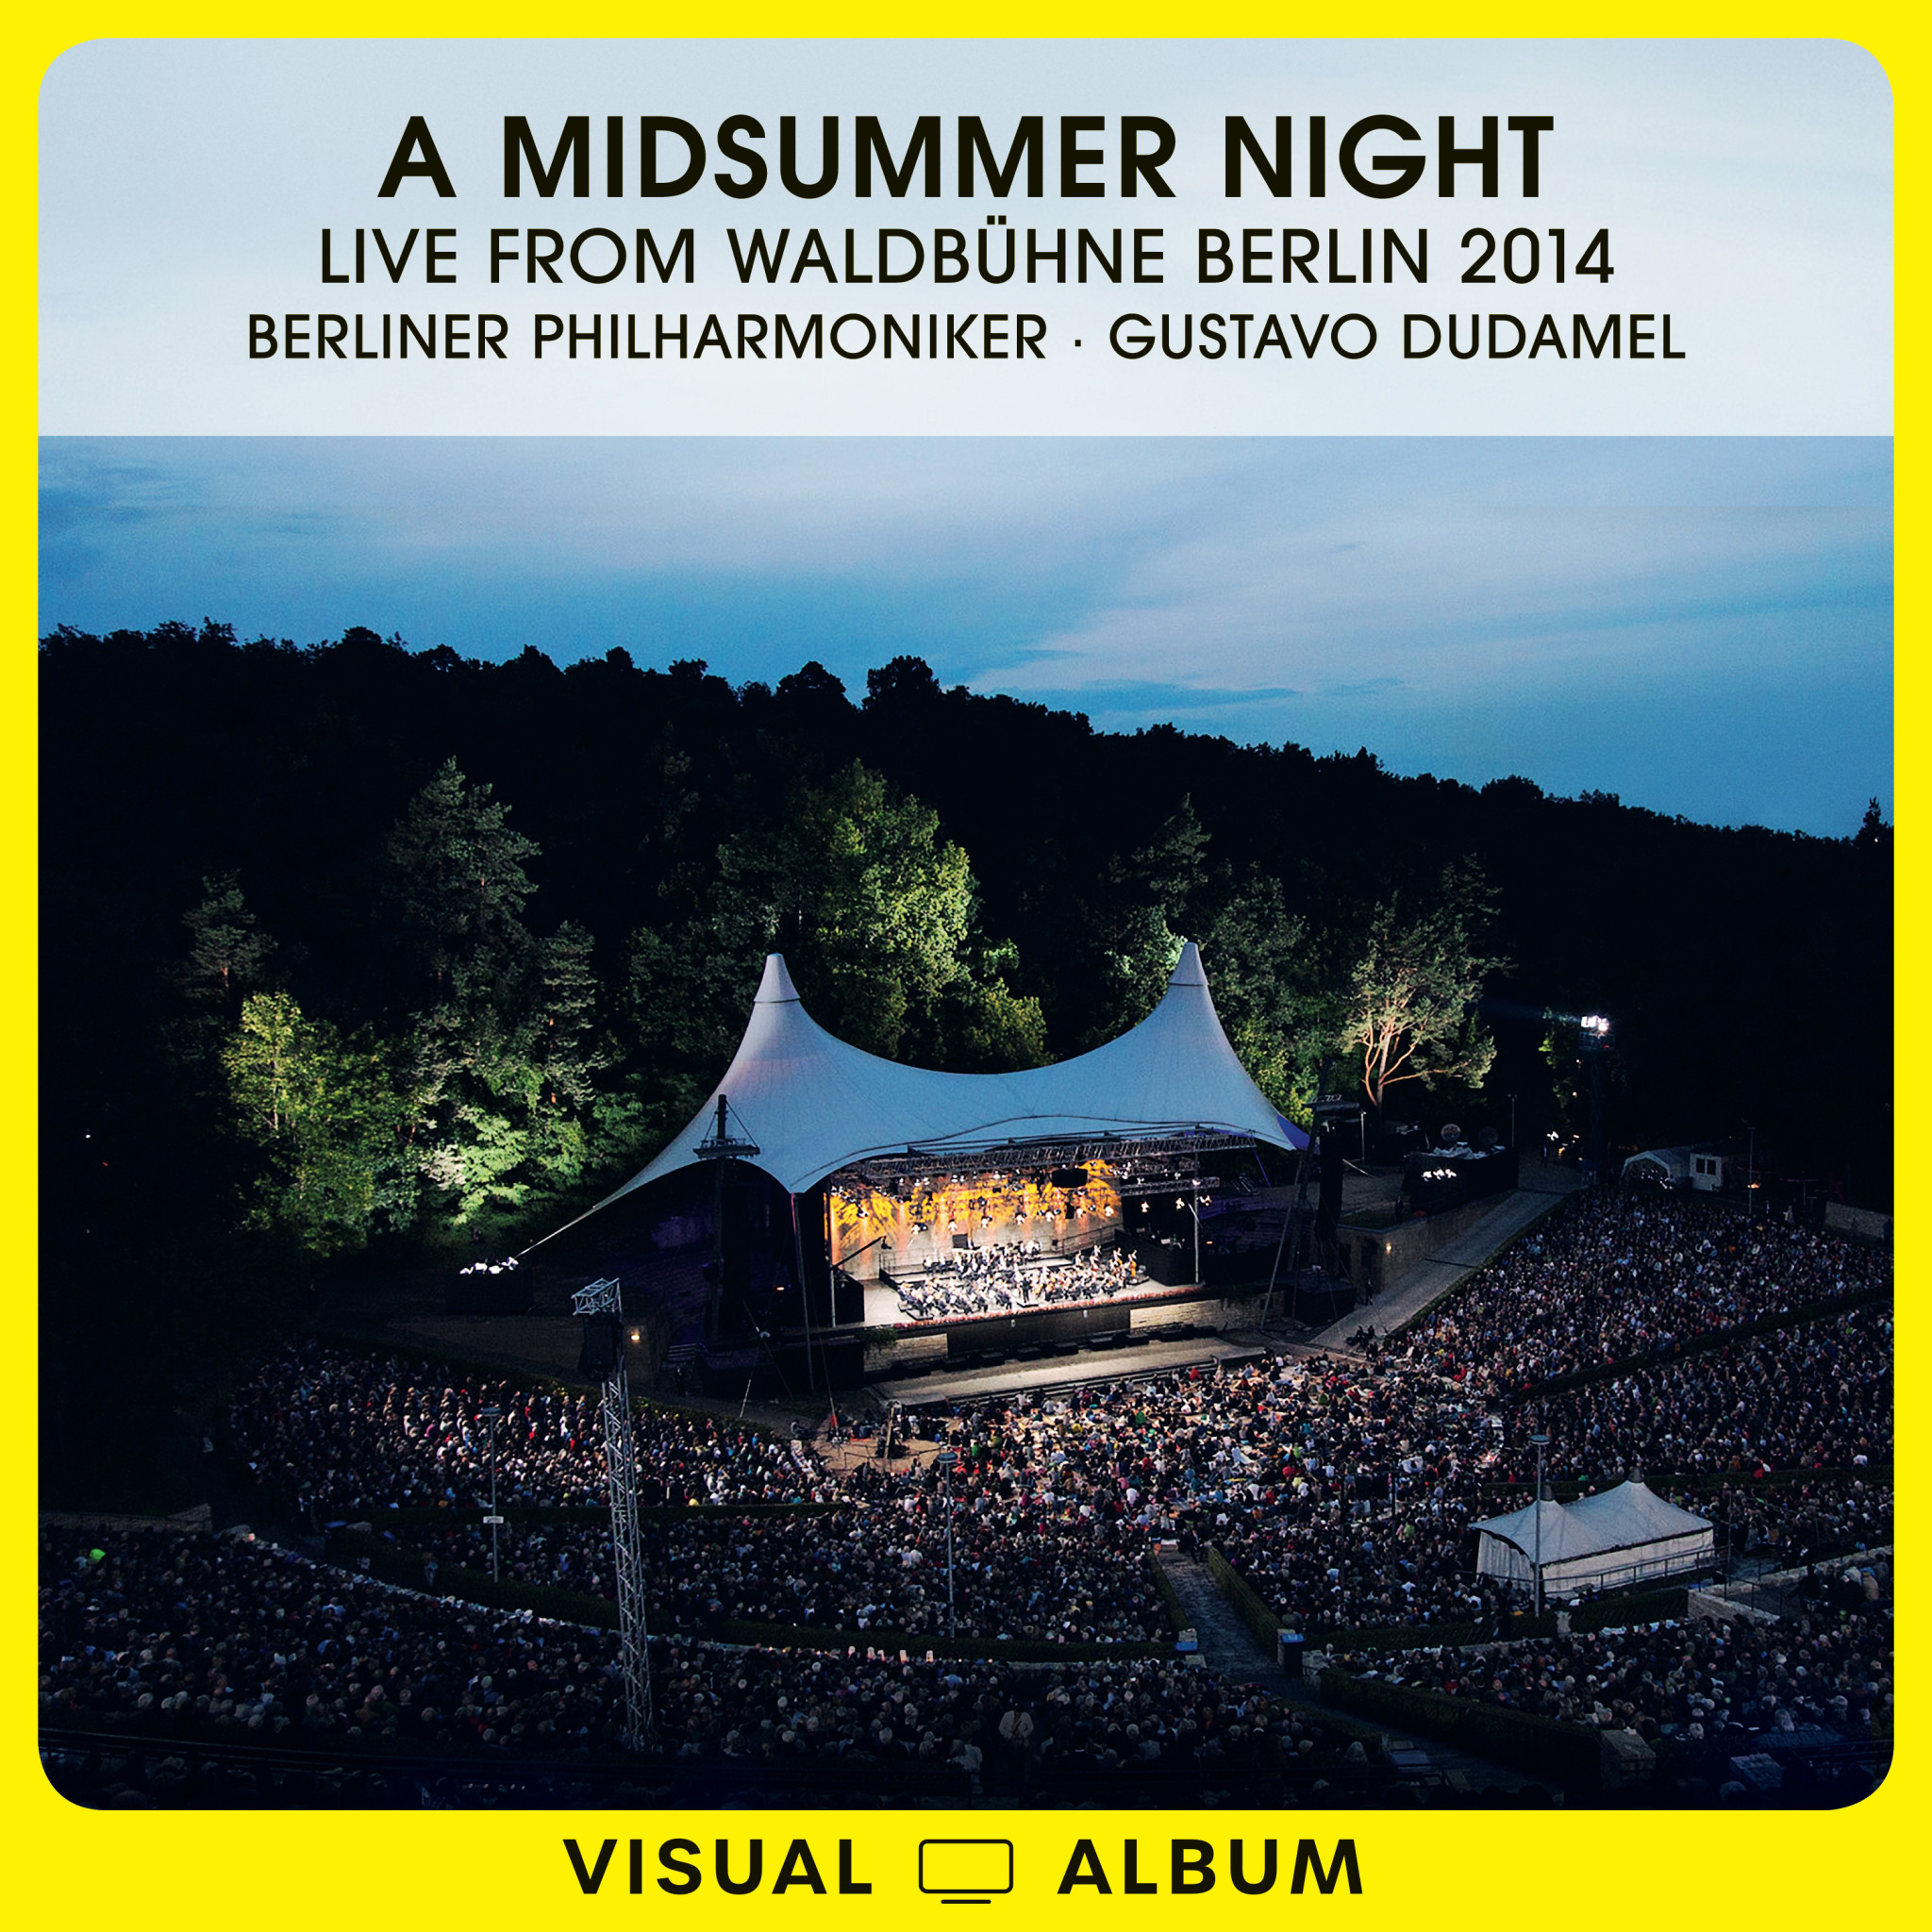 Dudamel Midsummer Night Cover new